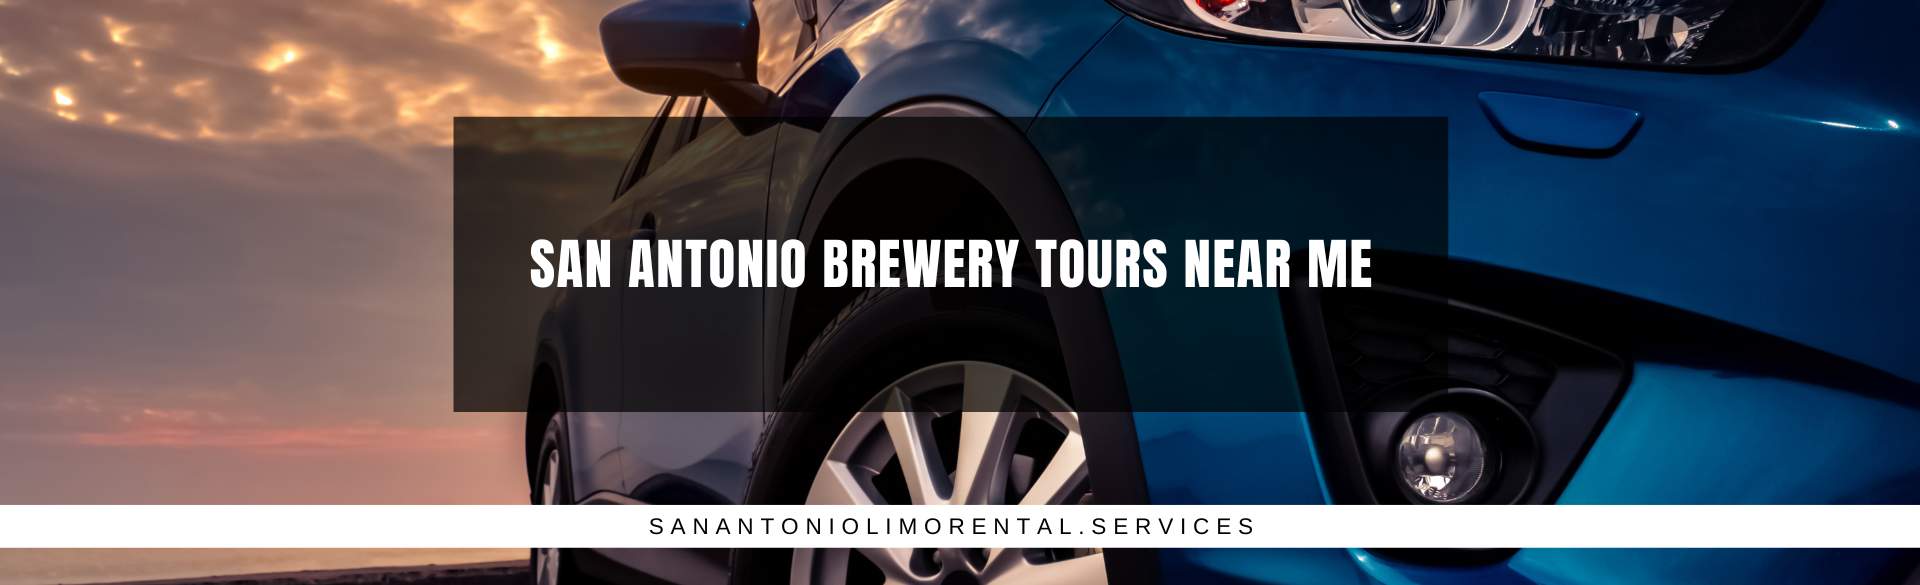 San Antonio Brewery Tours